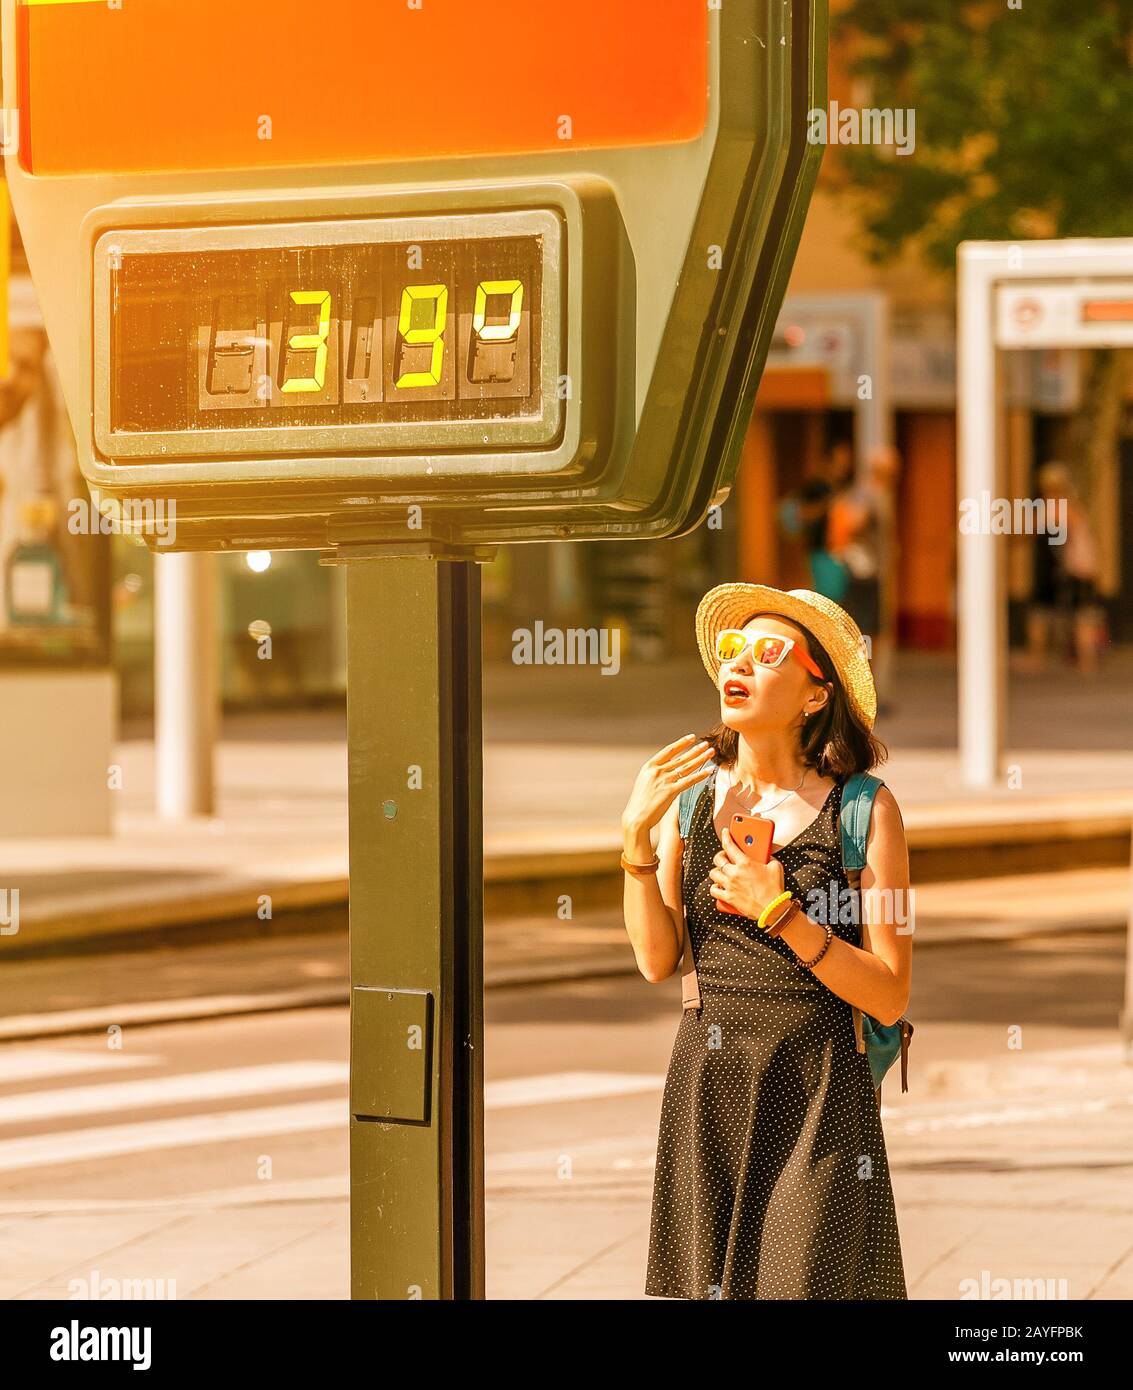 Frau leidet bei heißem Wetter im Freien unter Hitze und Sonneneinschlag vor dem Hintergrund eines Straßenthermometers mit 39 Grad Celsius Stockfoto